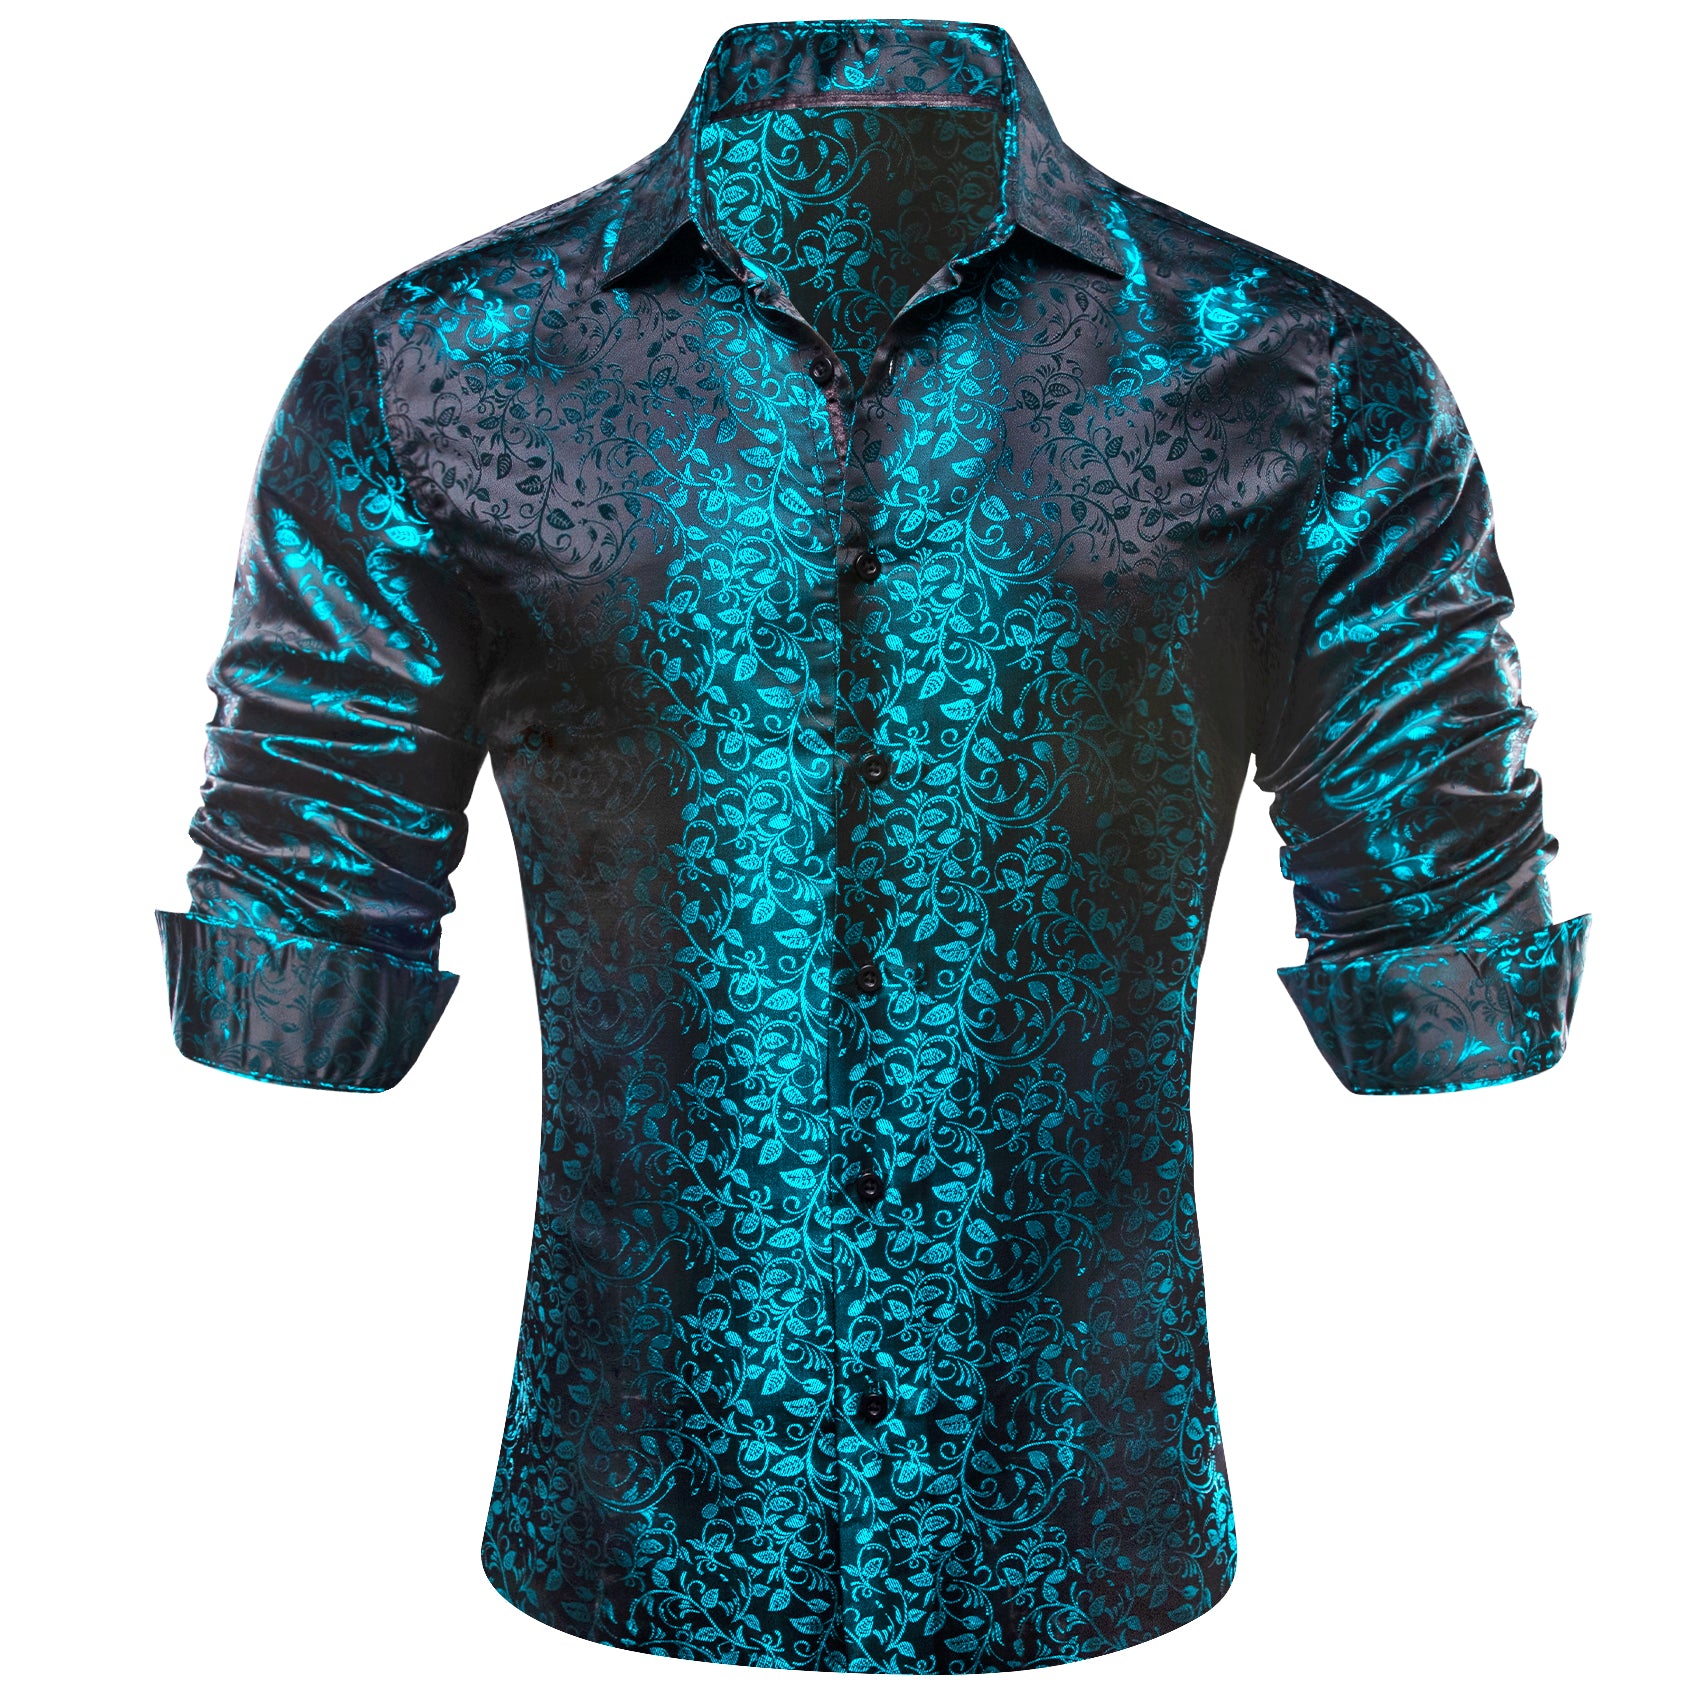 Barry.wang Blue Black Floral Silk Shirt